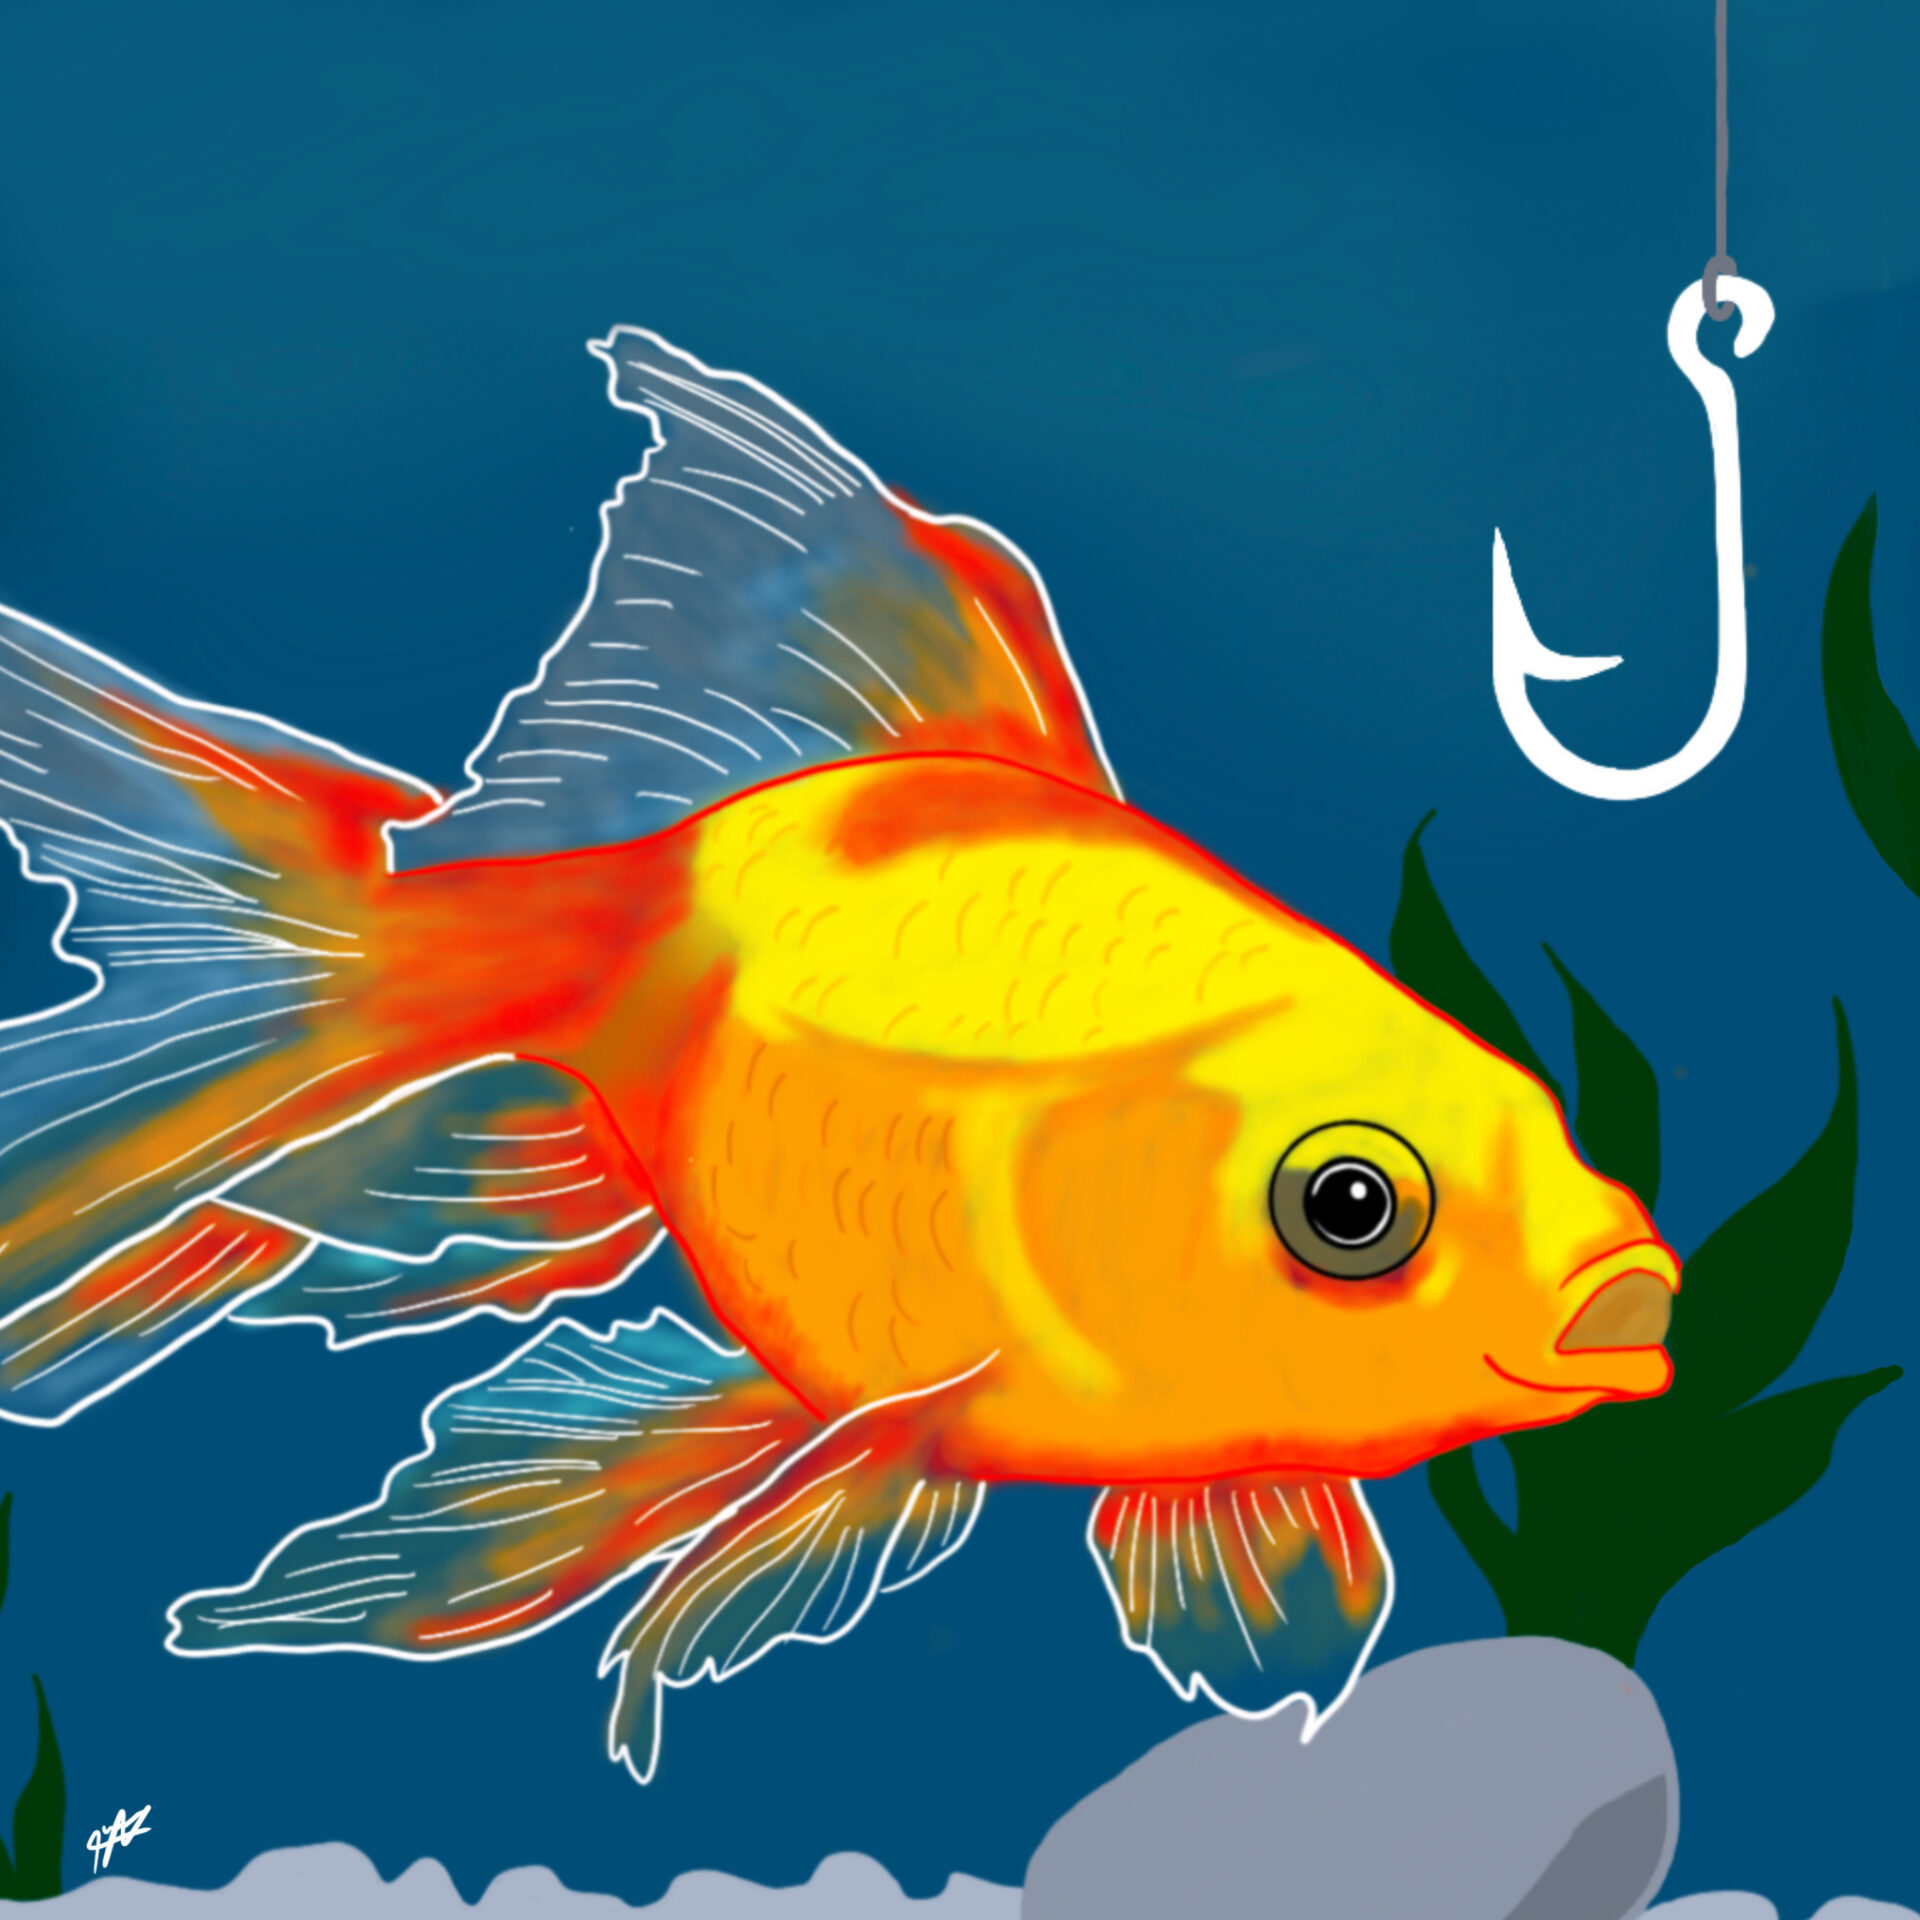 Les poissons rouges (en aquarium) - Espace Vet